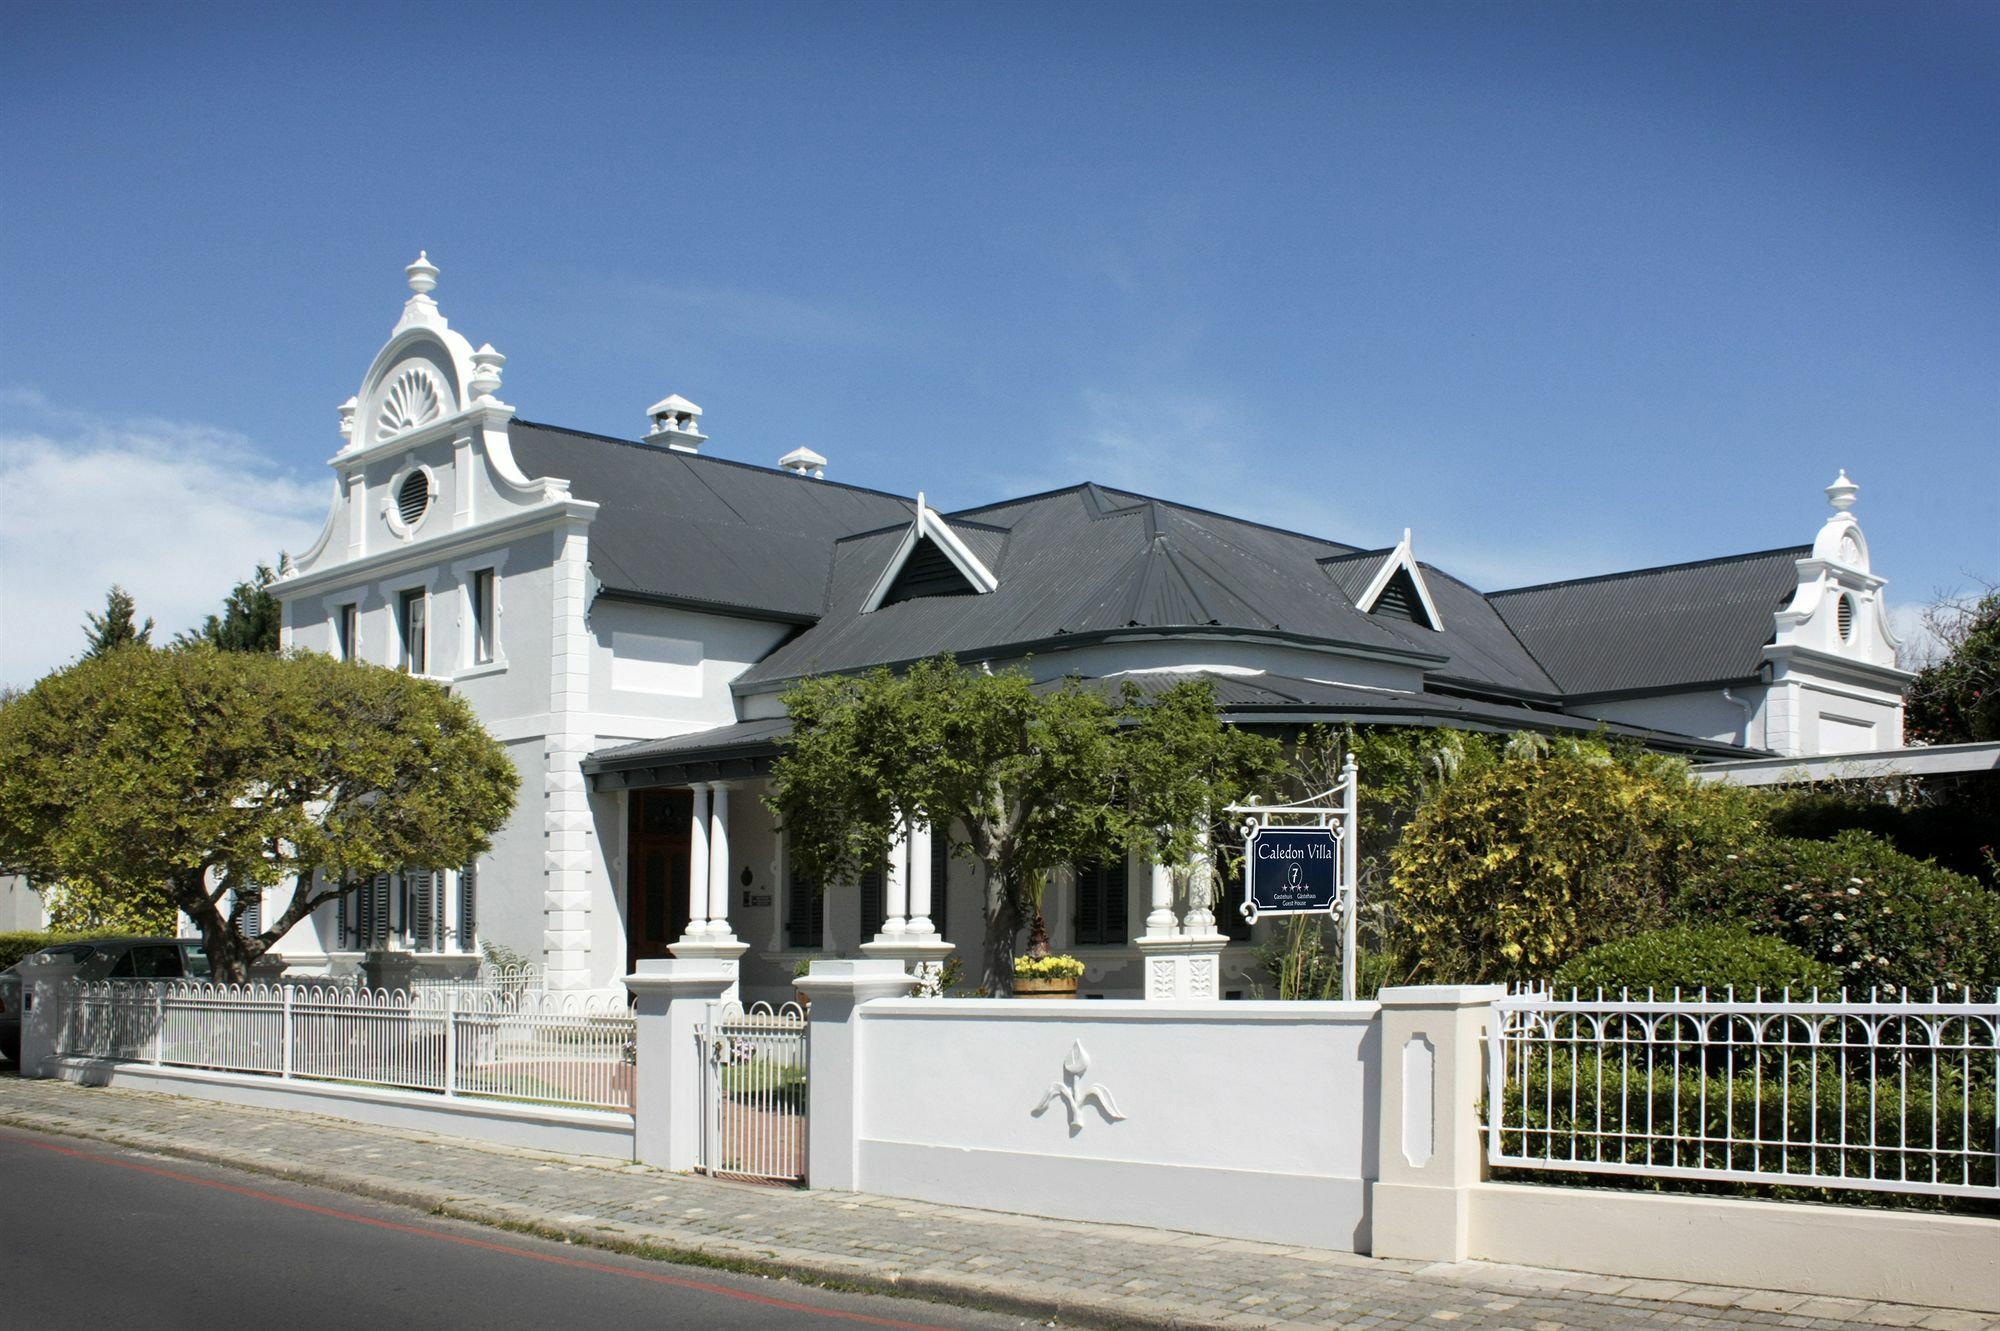 Caledon Villa Stellenbosch Exterior foto